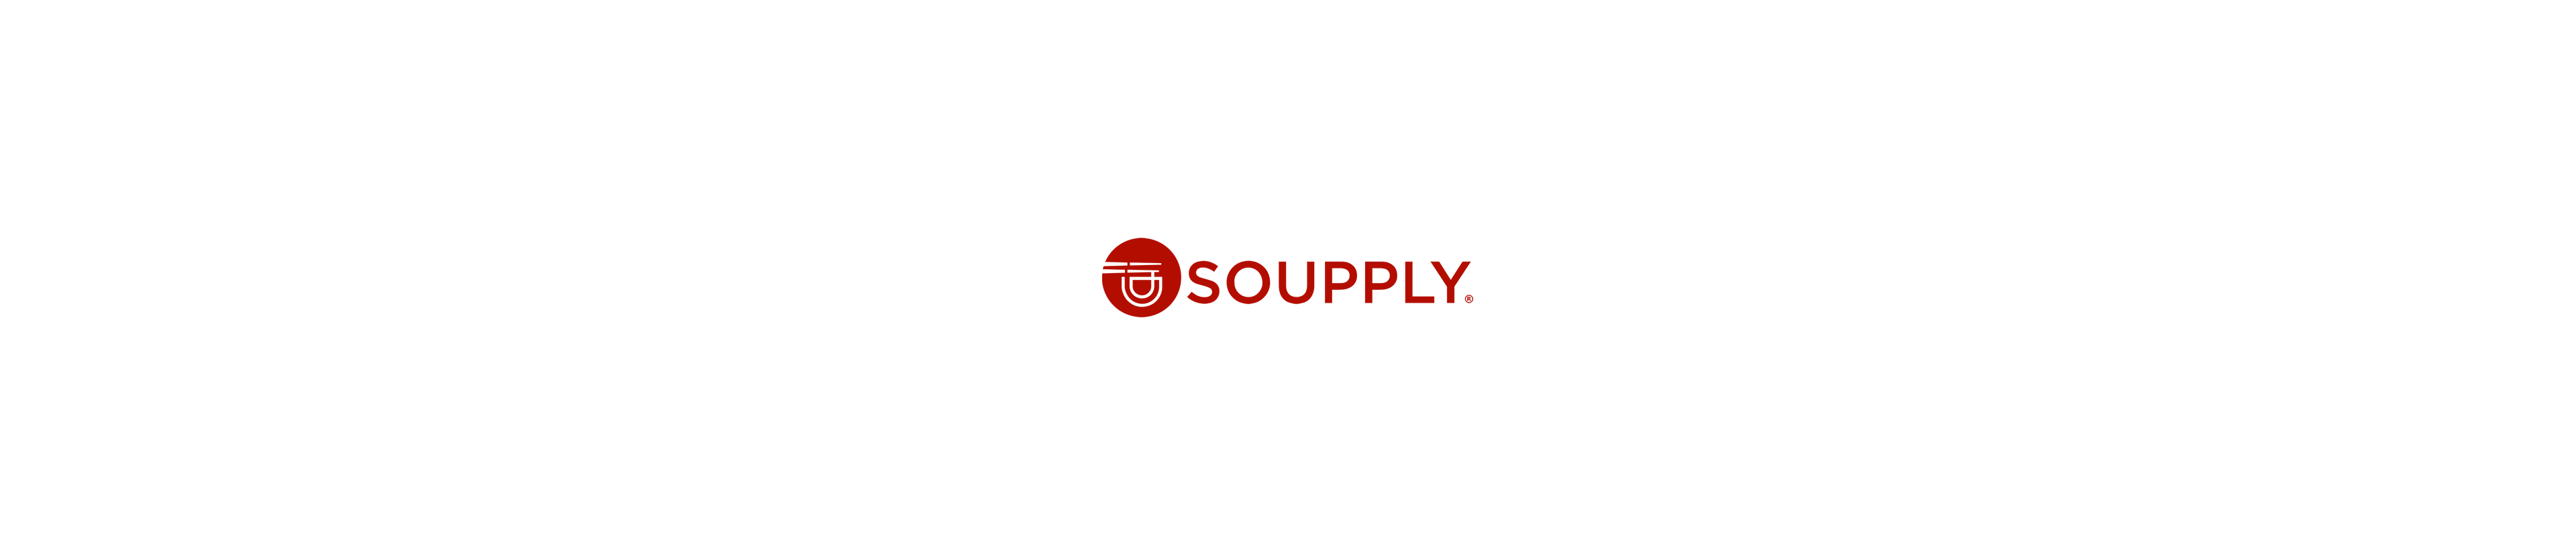 soupply